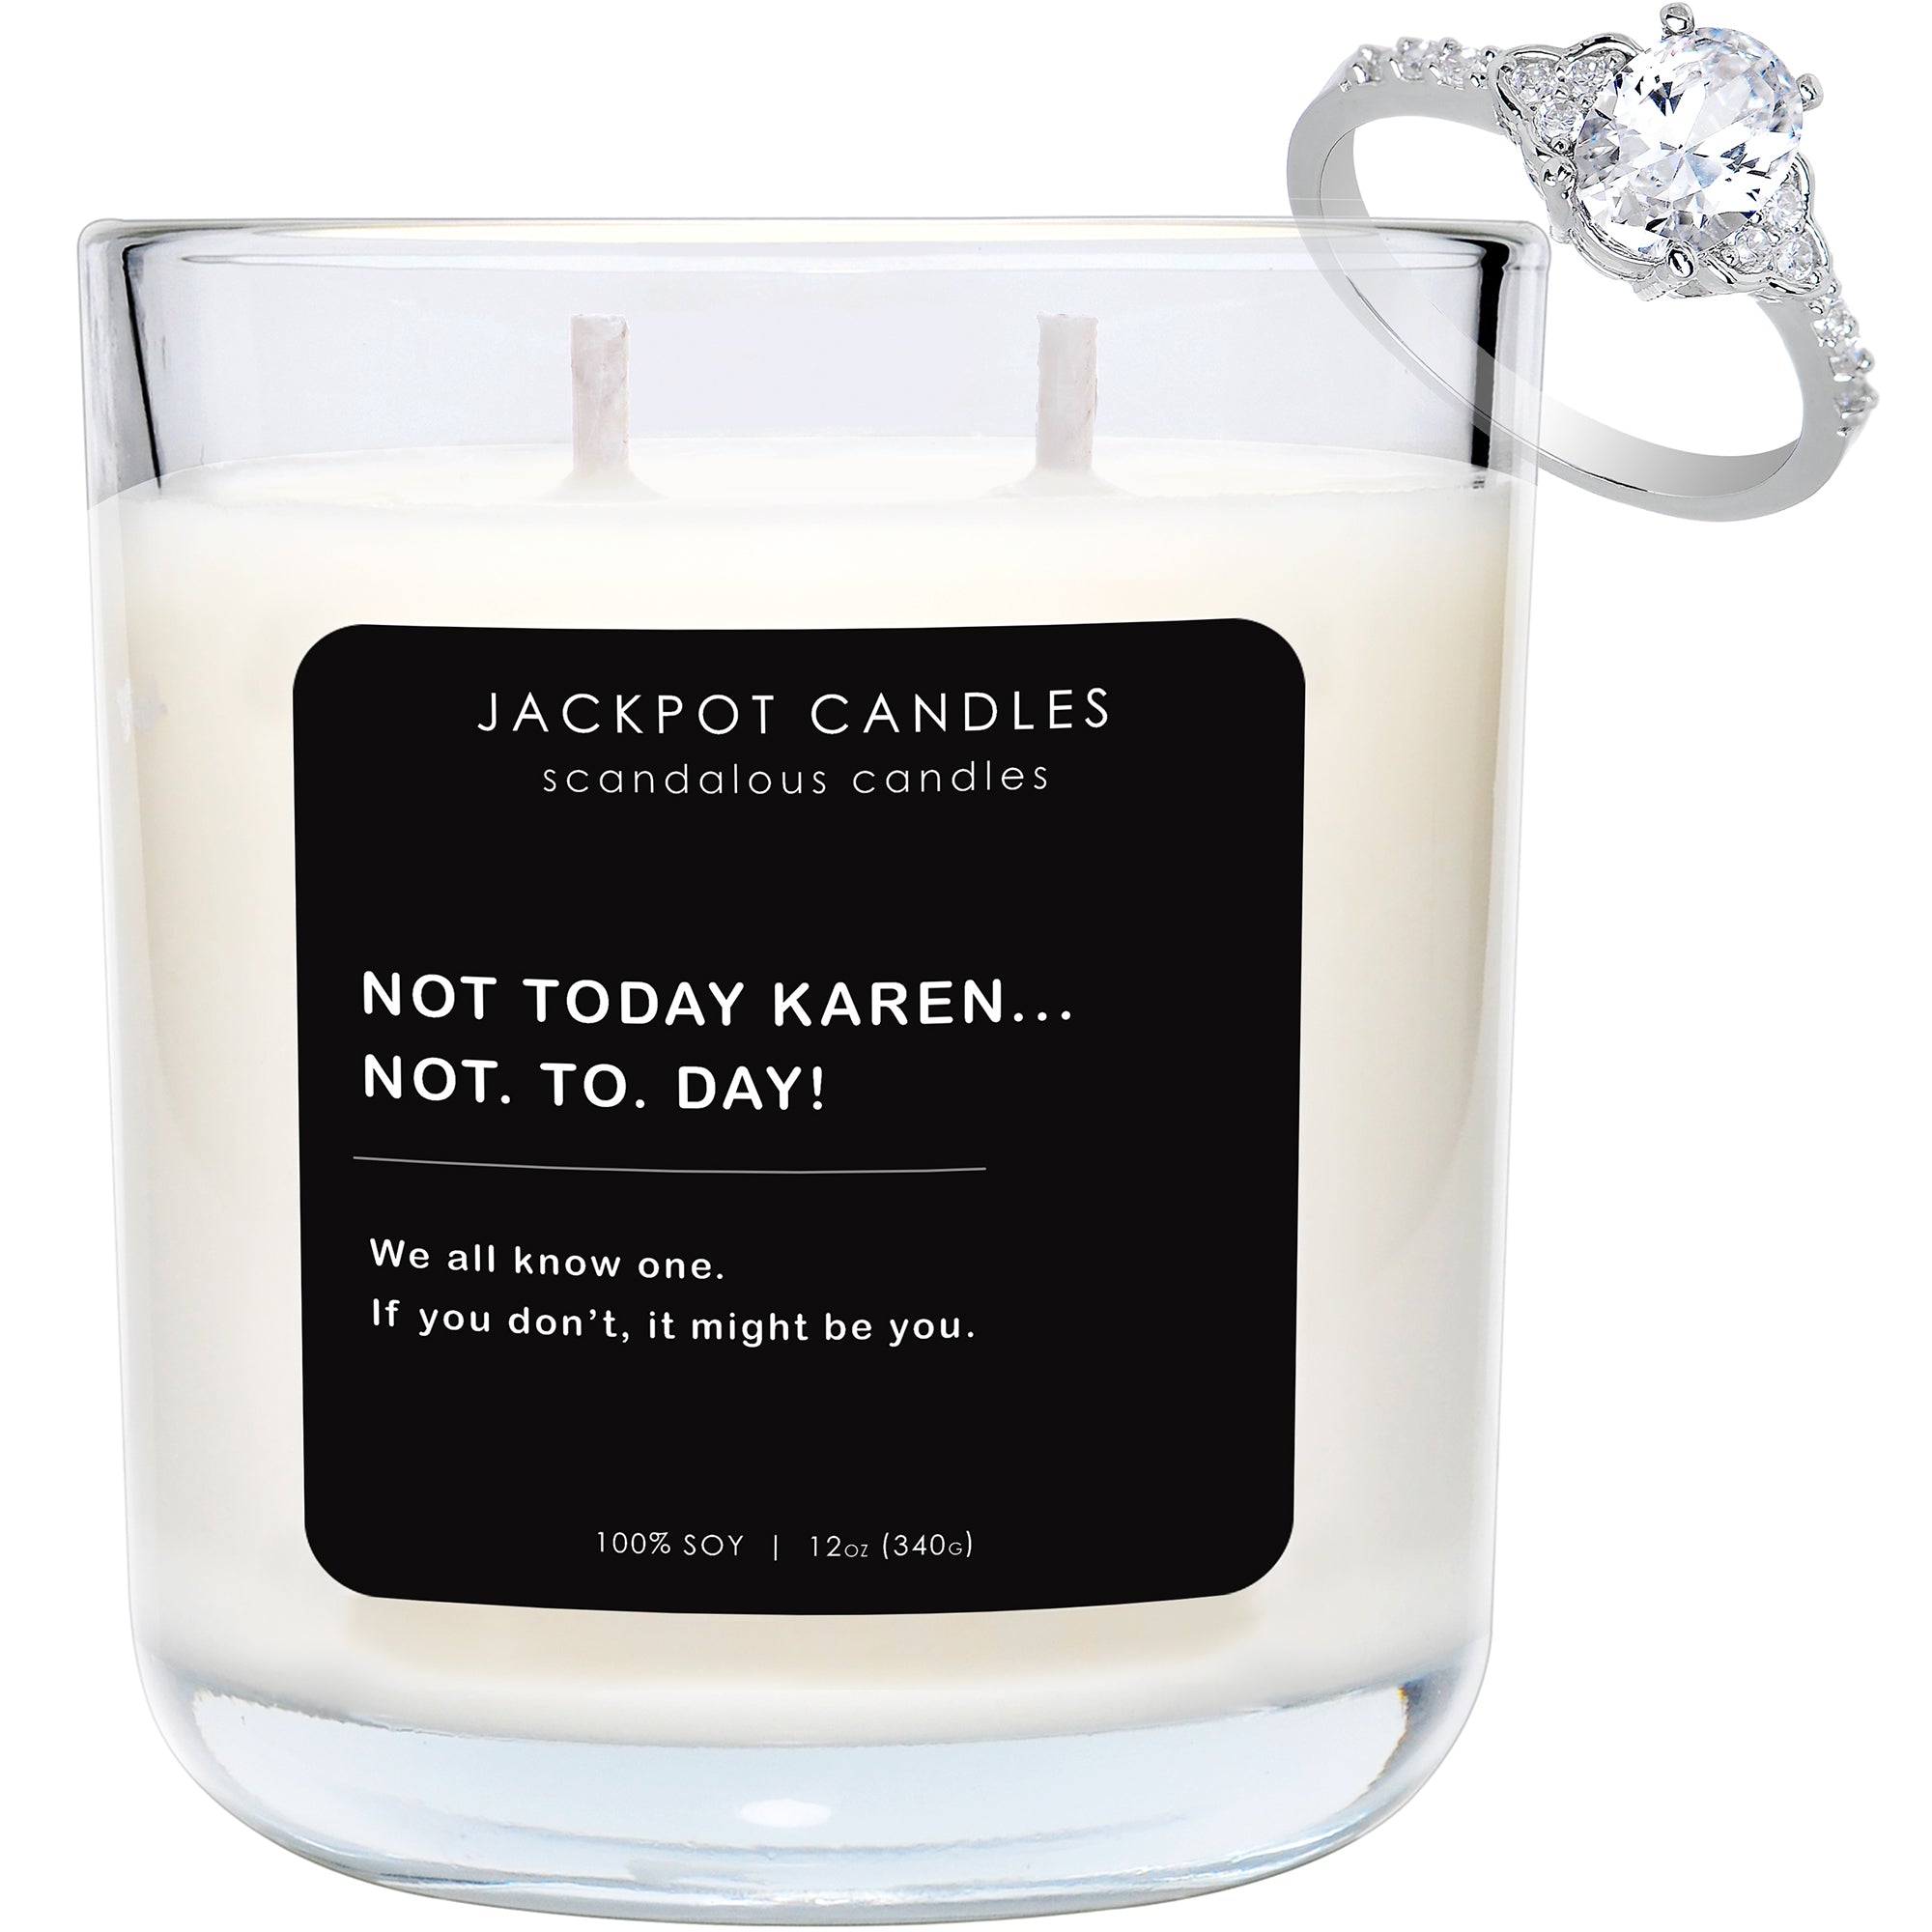 Not Today Karen Scandalous Candle